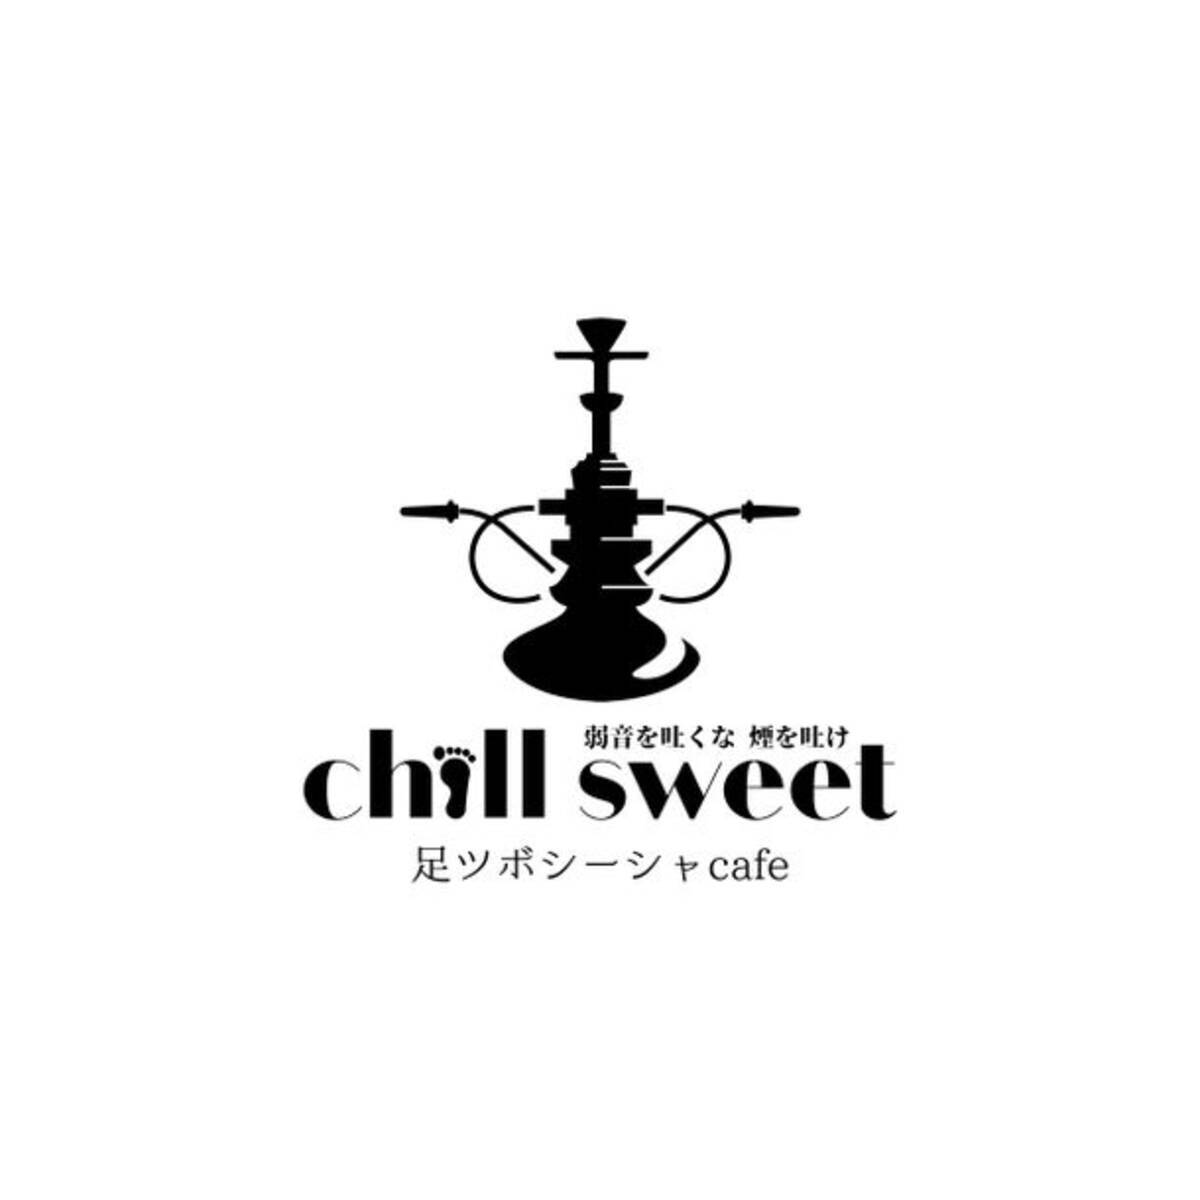 コンセプトはシーシャ 足ツボの Chill Sweet カフェが六本木に新オープン 21年5月4日 エキサイトニュース